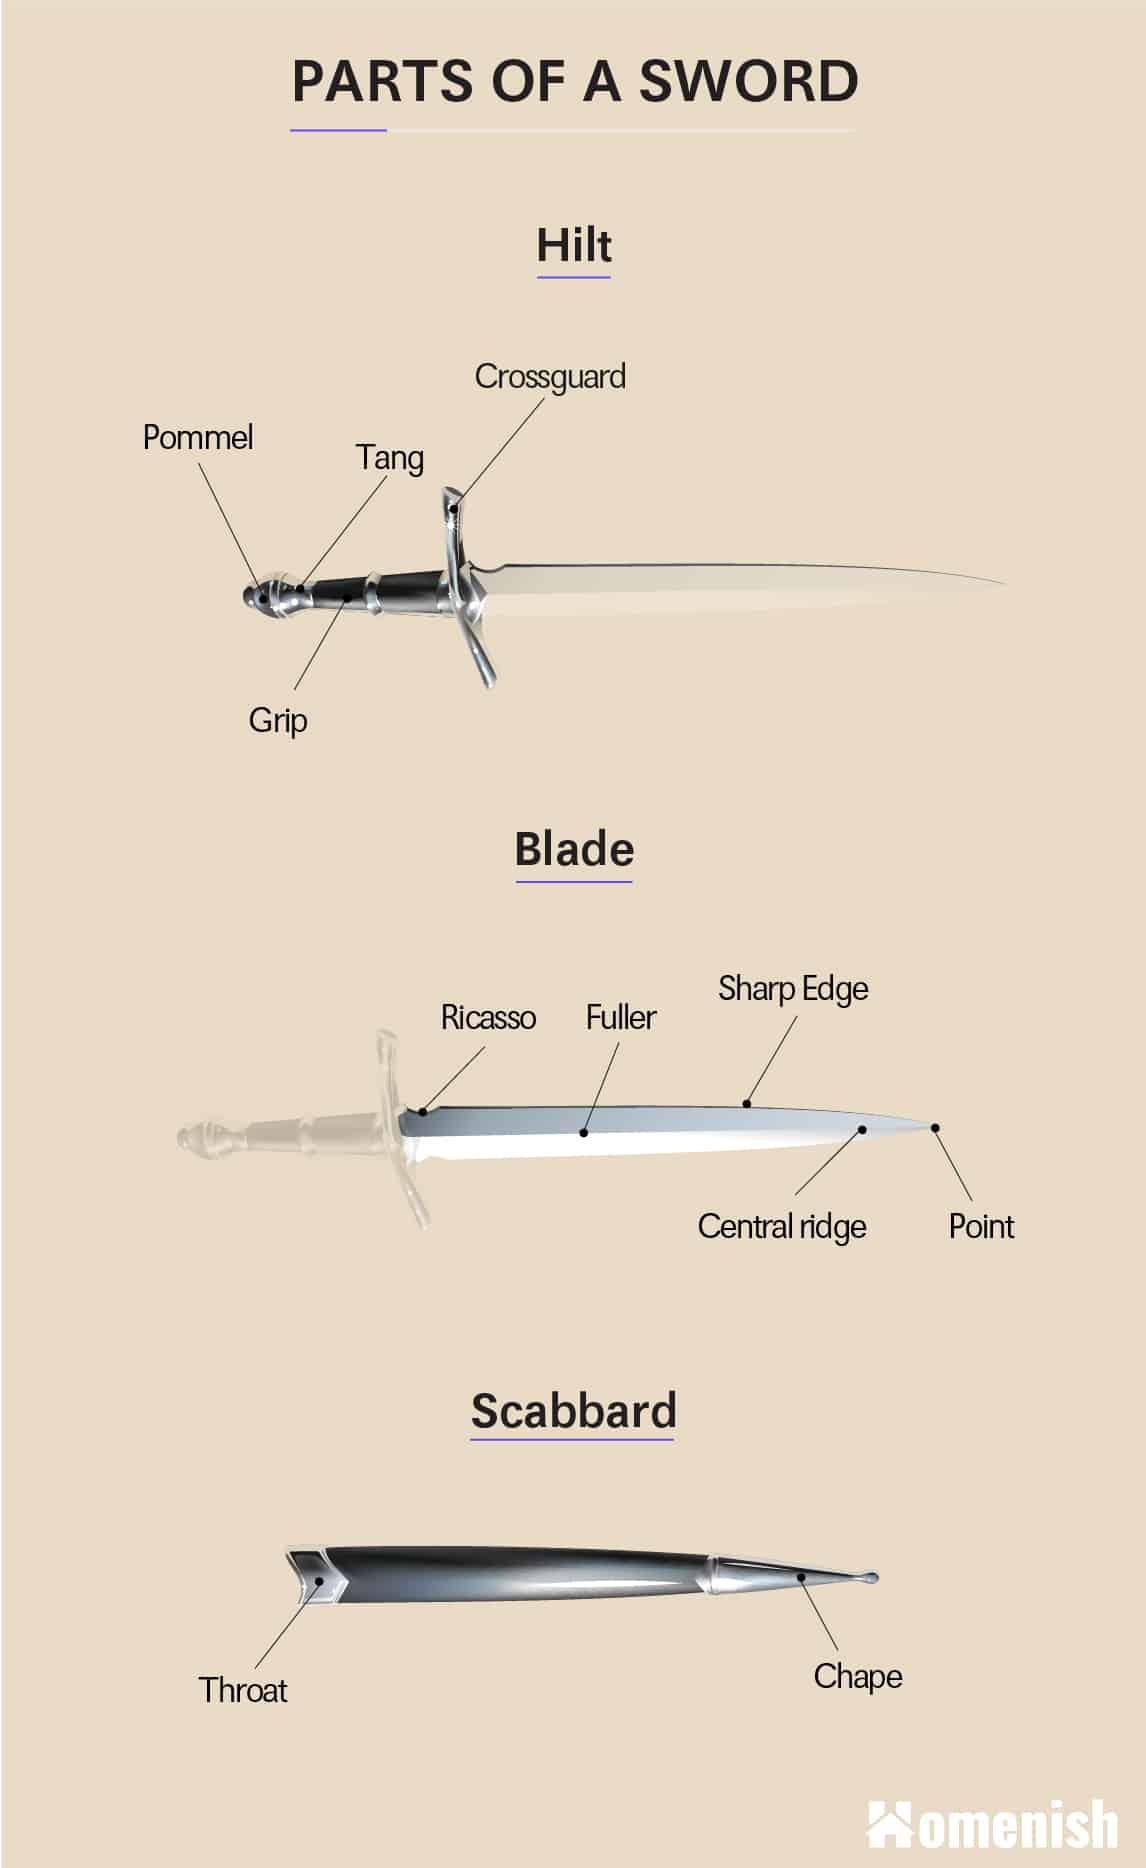 Parts of a Sword - Full Part Diagram